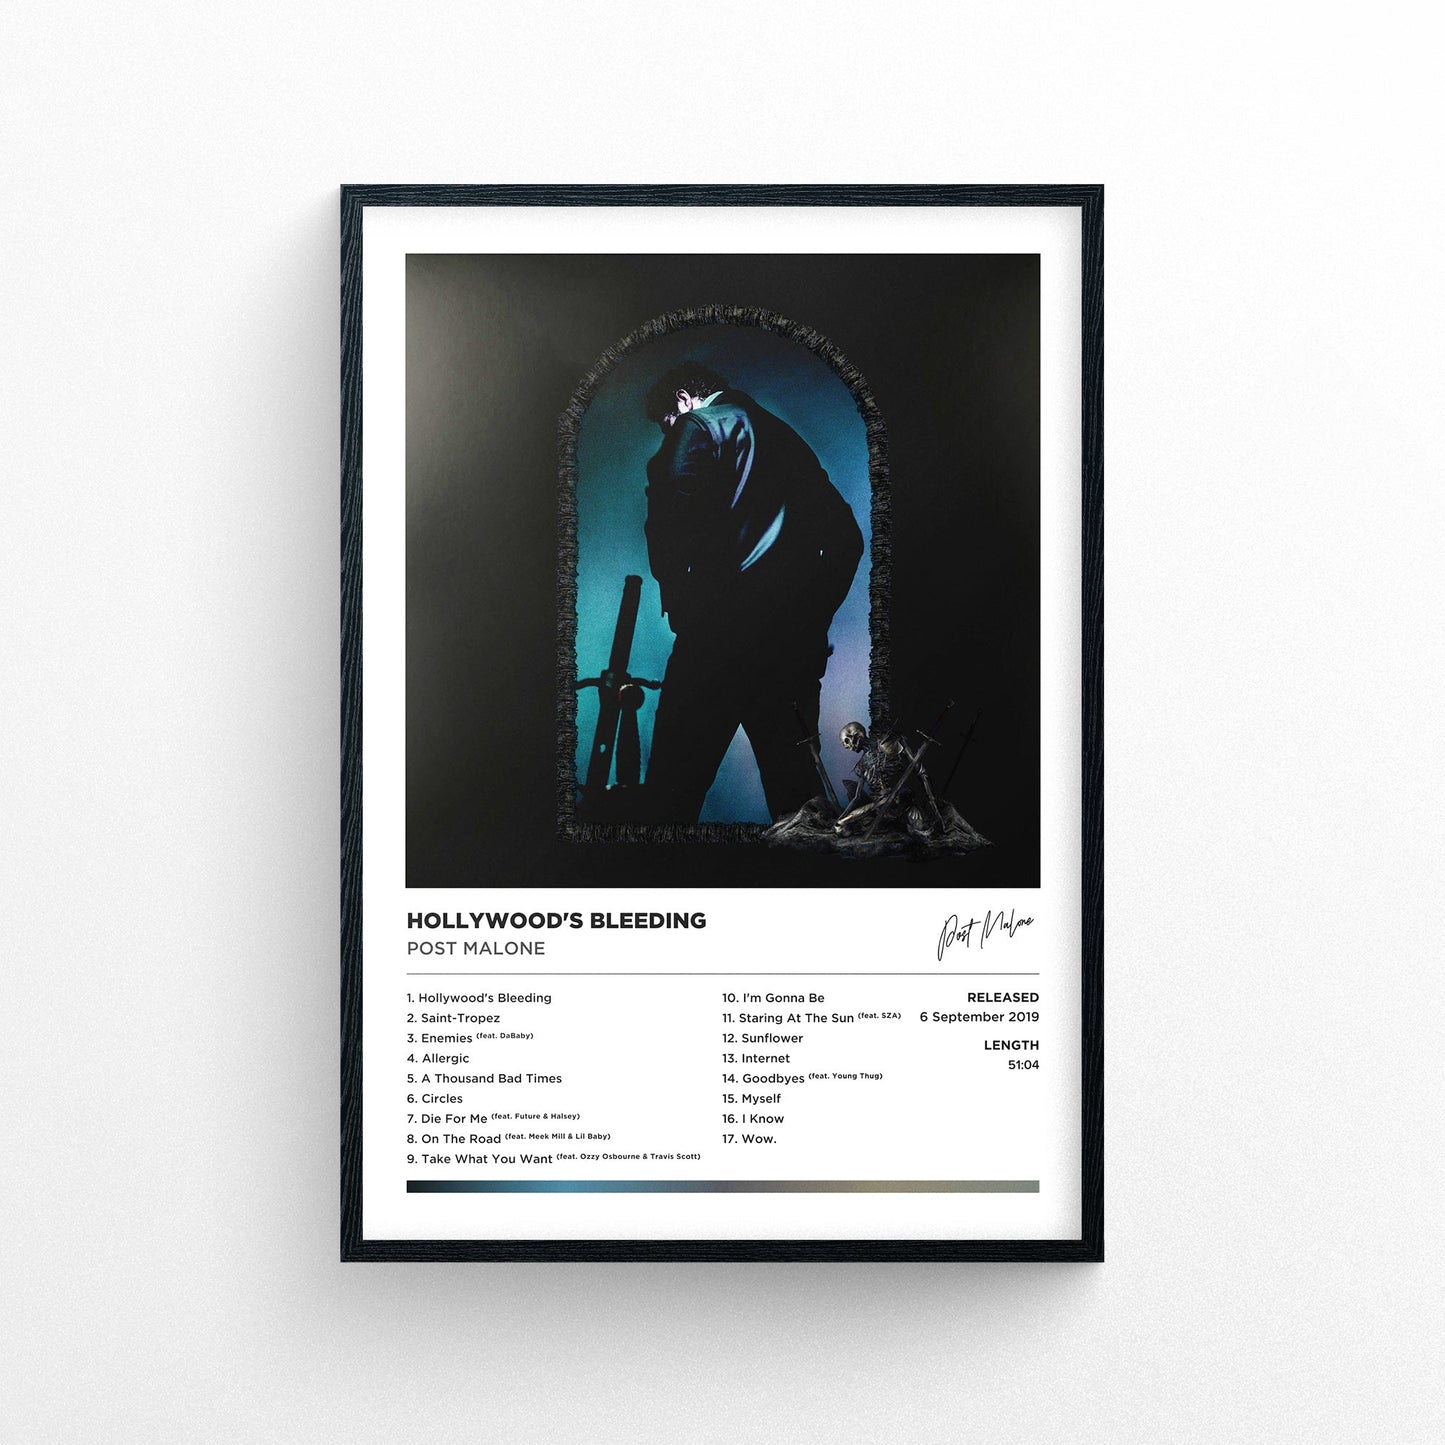 Post Malone - Hollywood's Bleeding Framed Poster Print | Polaroid Style | Album Cover Artwork